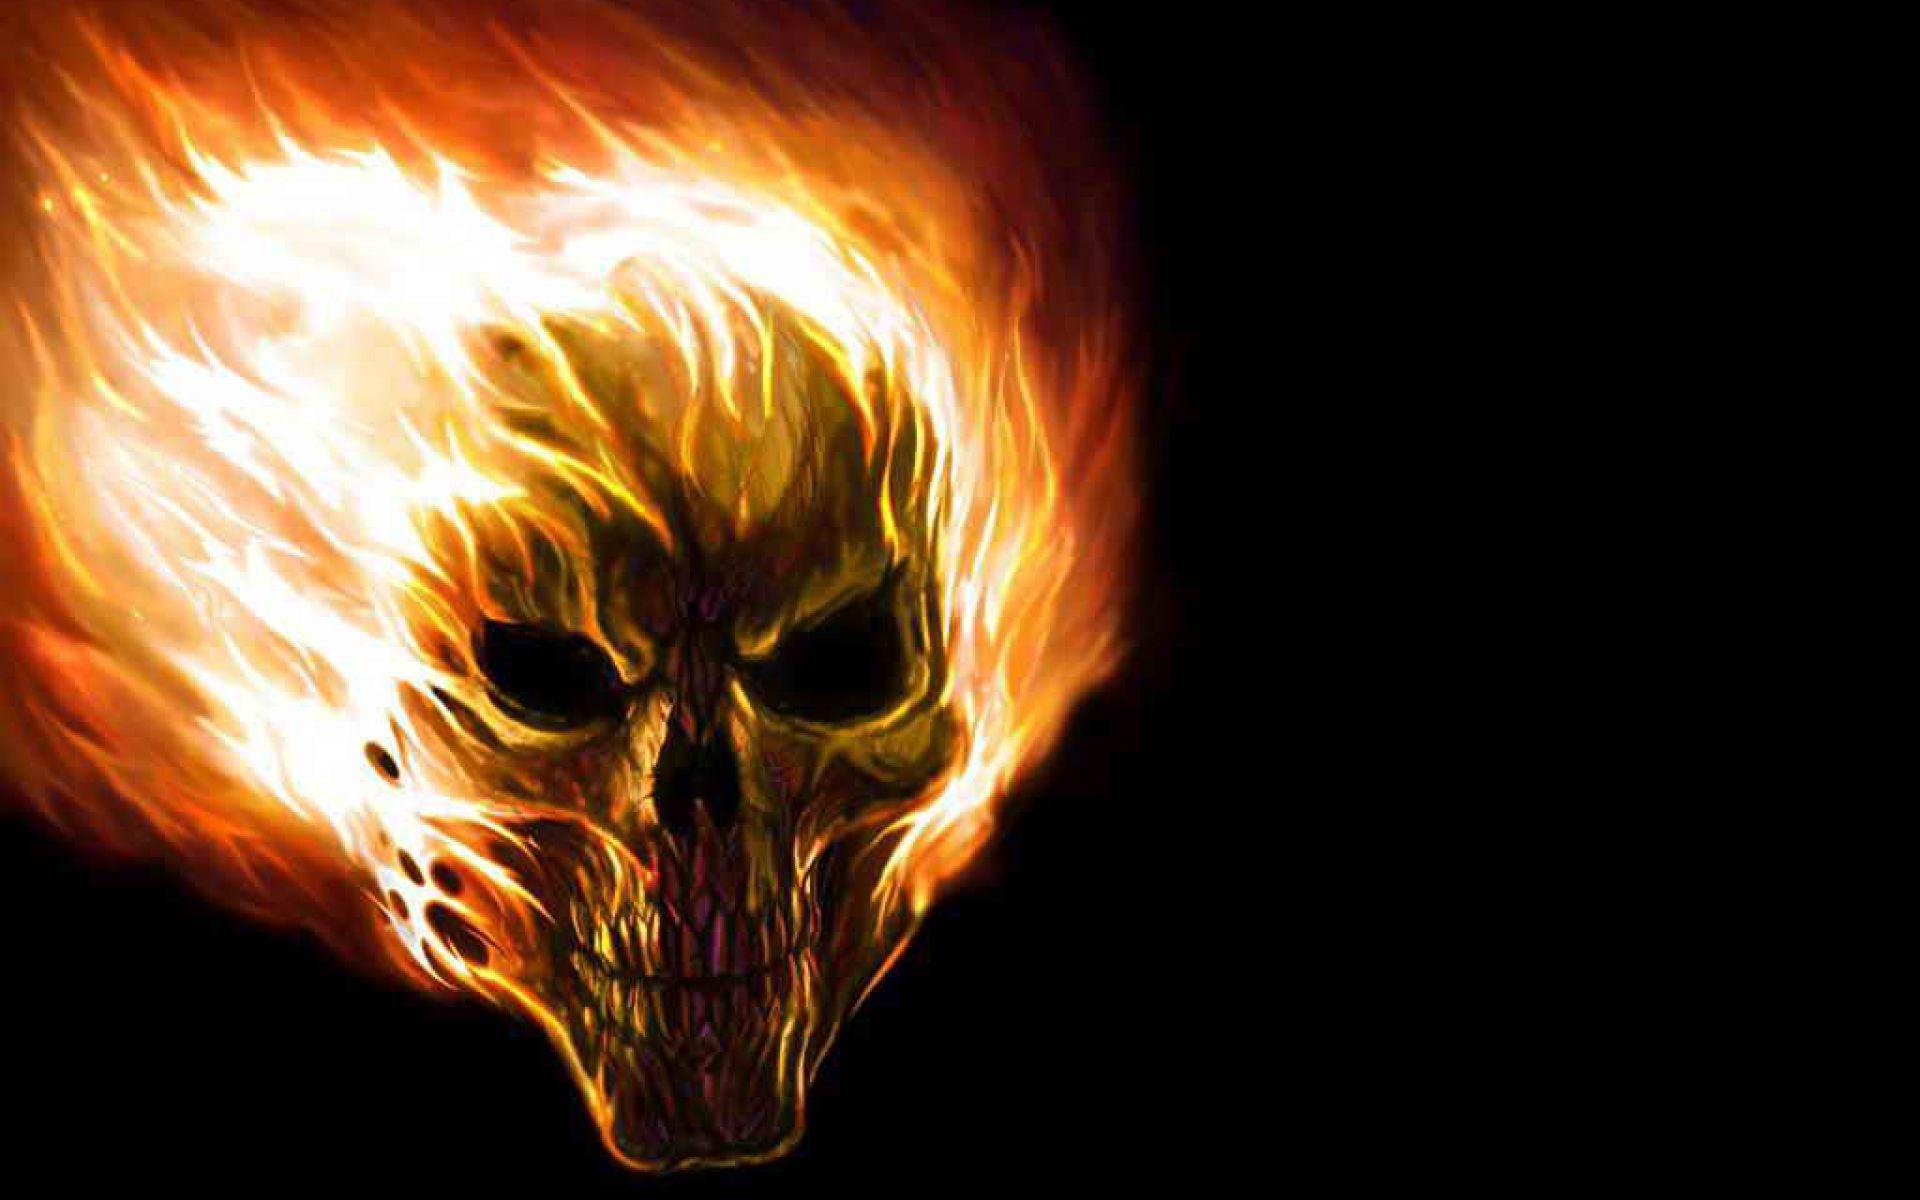 Flaming Skull Desktop Wallpaper